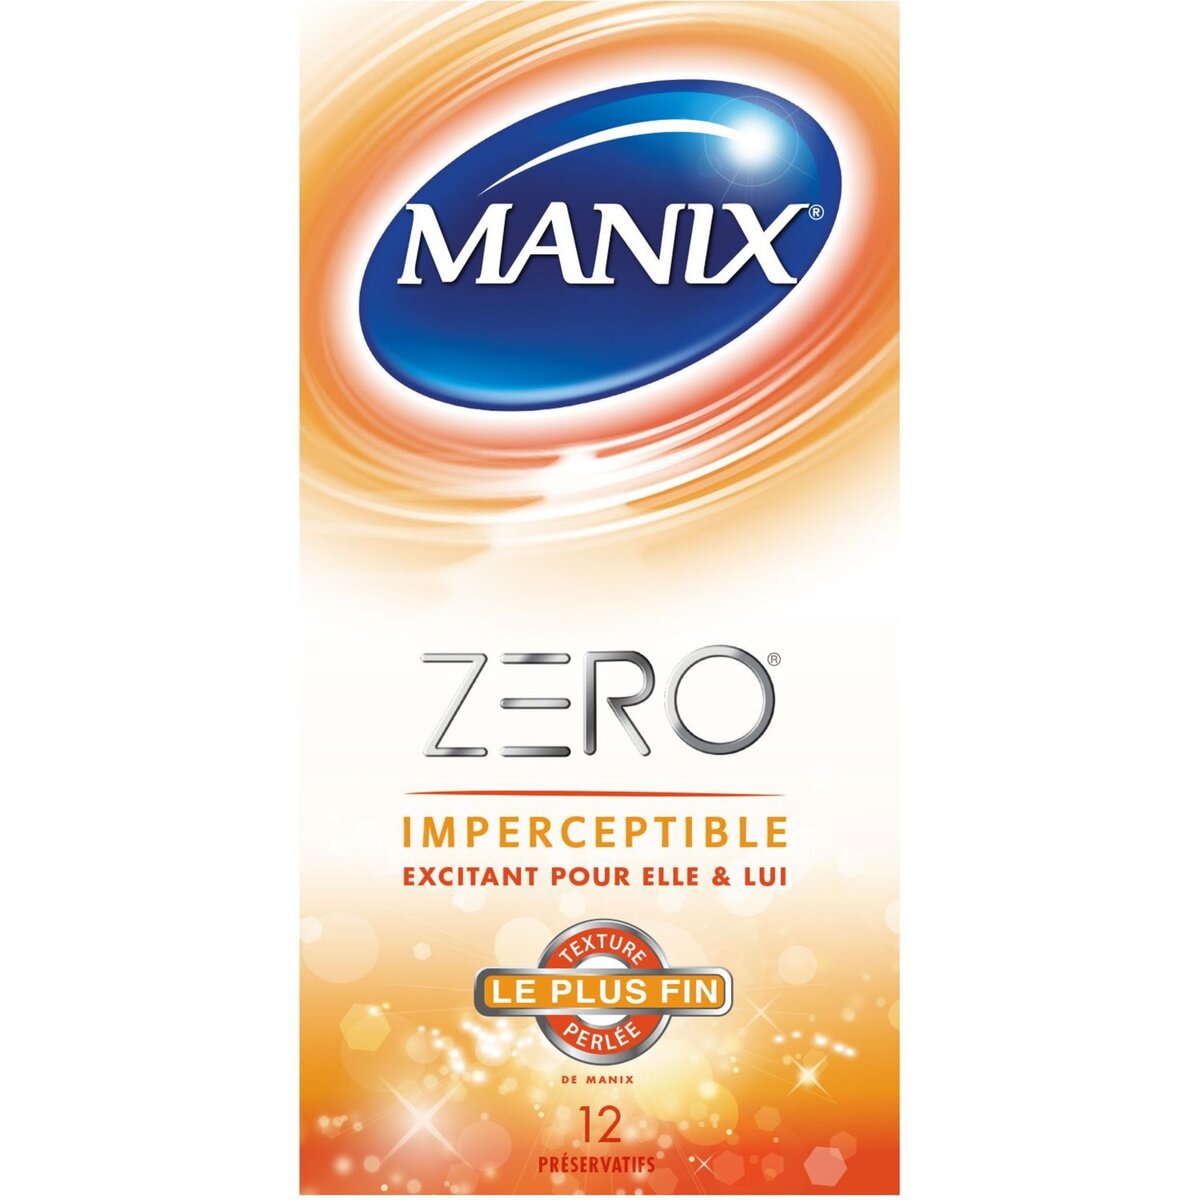 MANIX Zéro préservatifs imperceptibles texture perlée 12 préservatifs